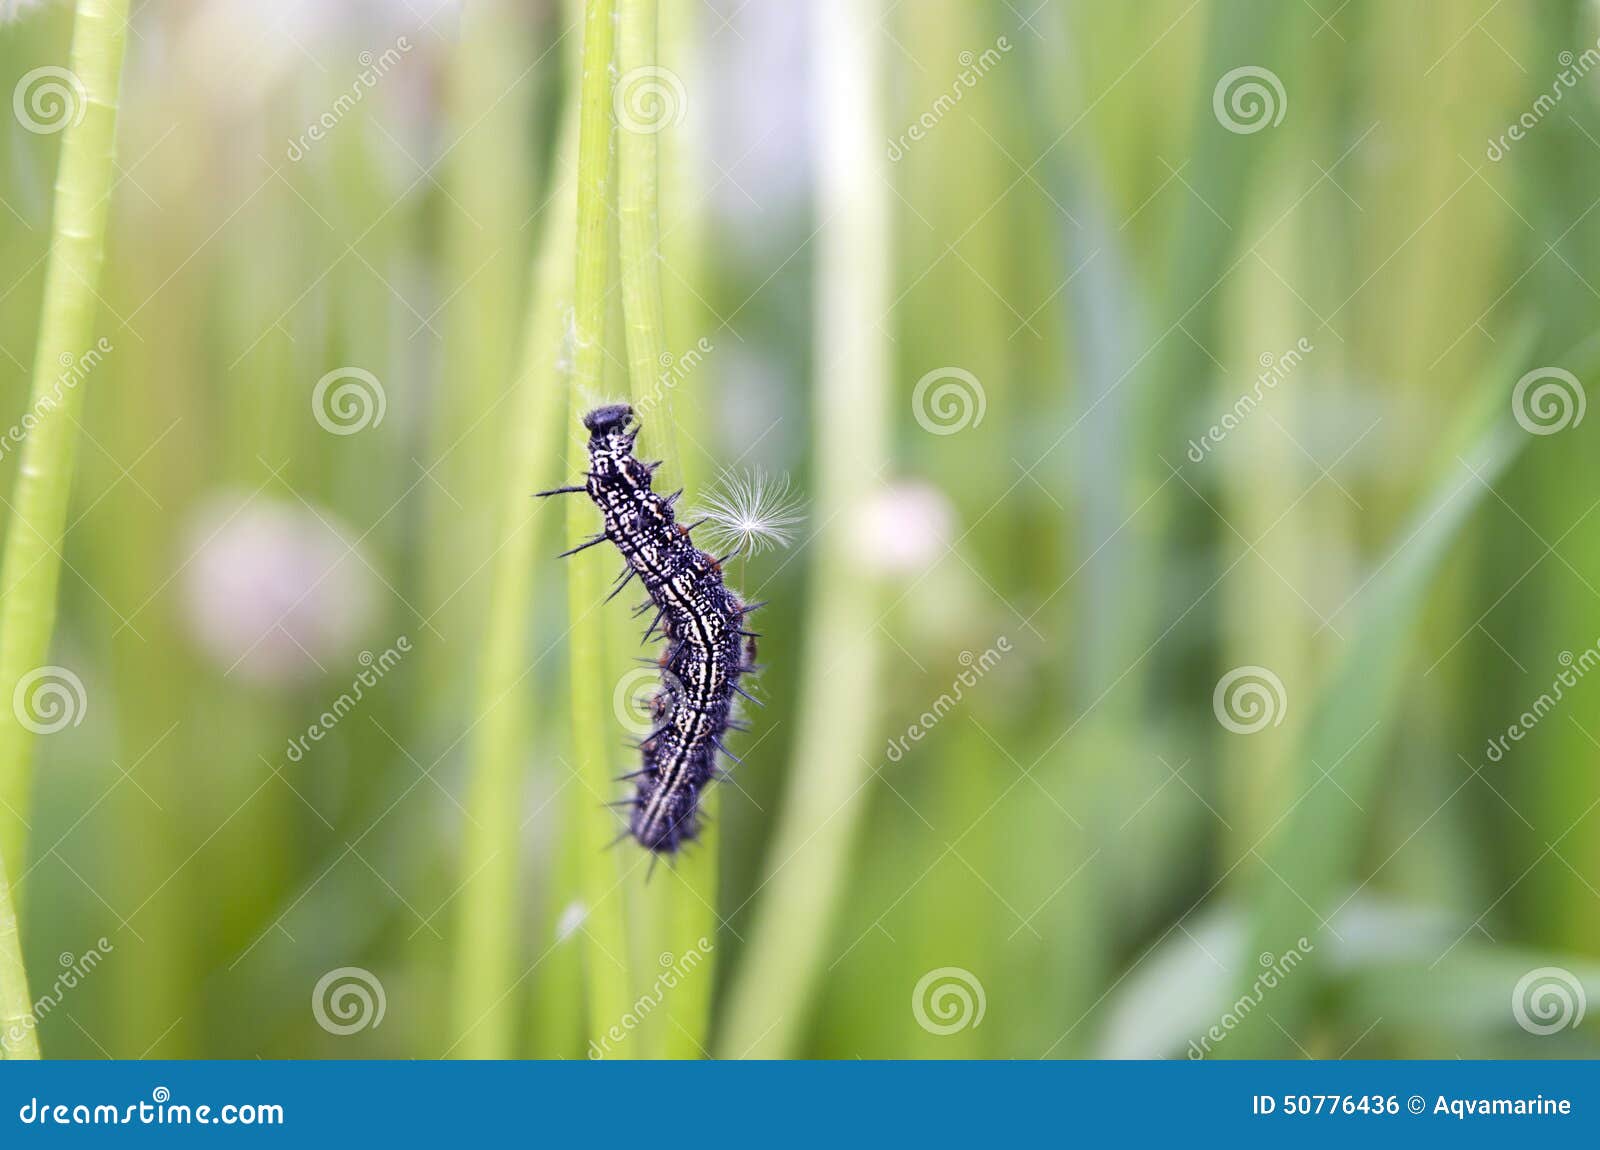 Червяк проползает мимо травинки за две минуты. Черная гусеница на траве. Чёрная гусеница с шипами. Black Caterpillar чёрная гусеница. Черная гусеница со звездами на спине.